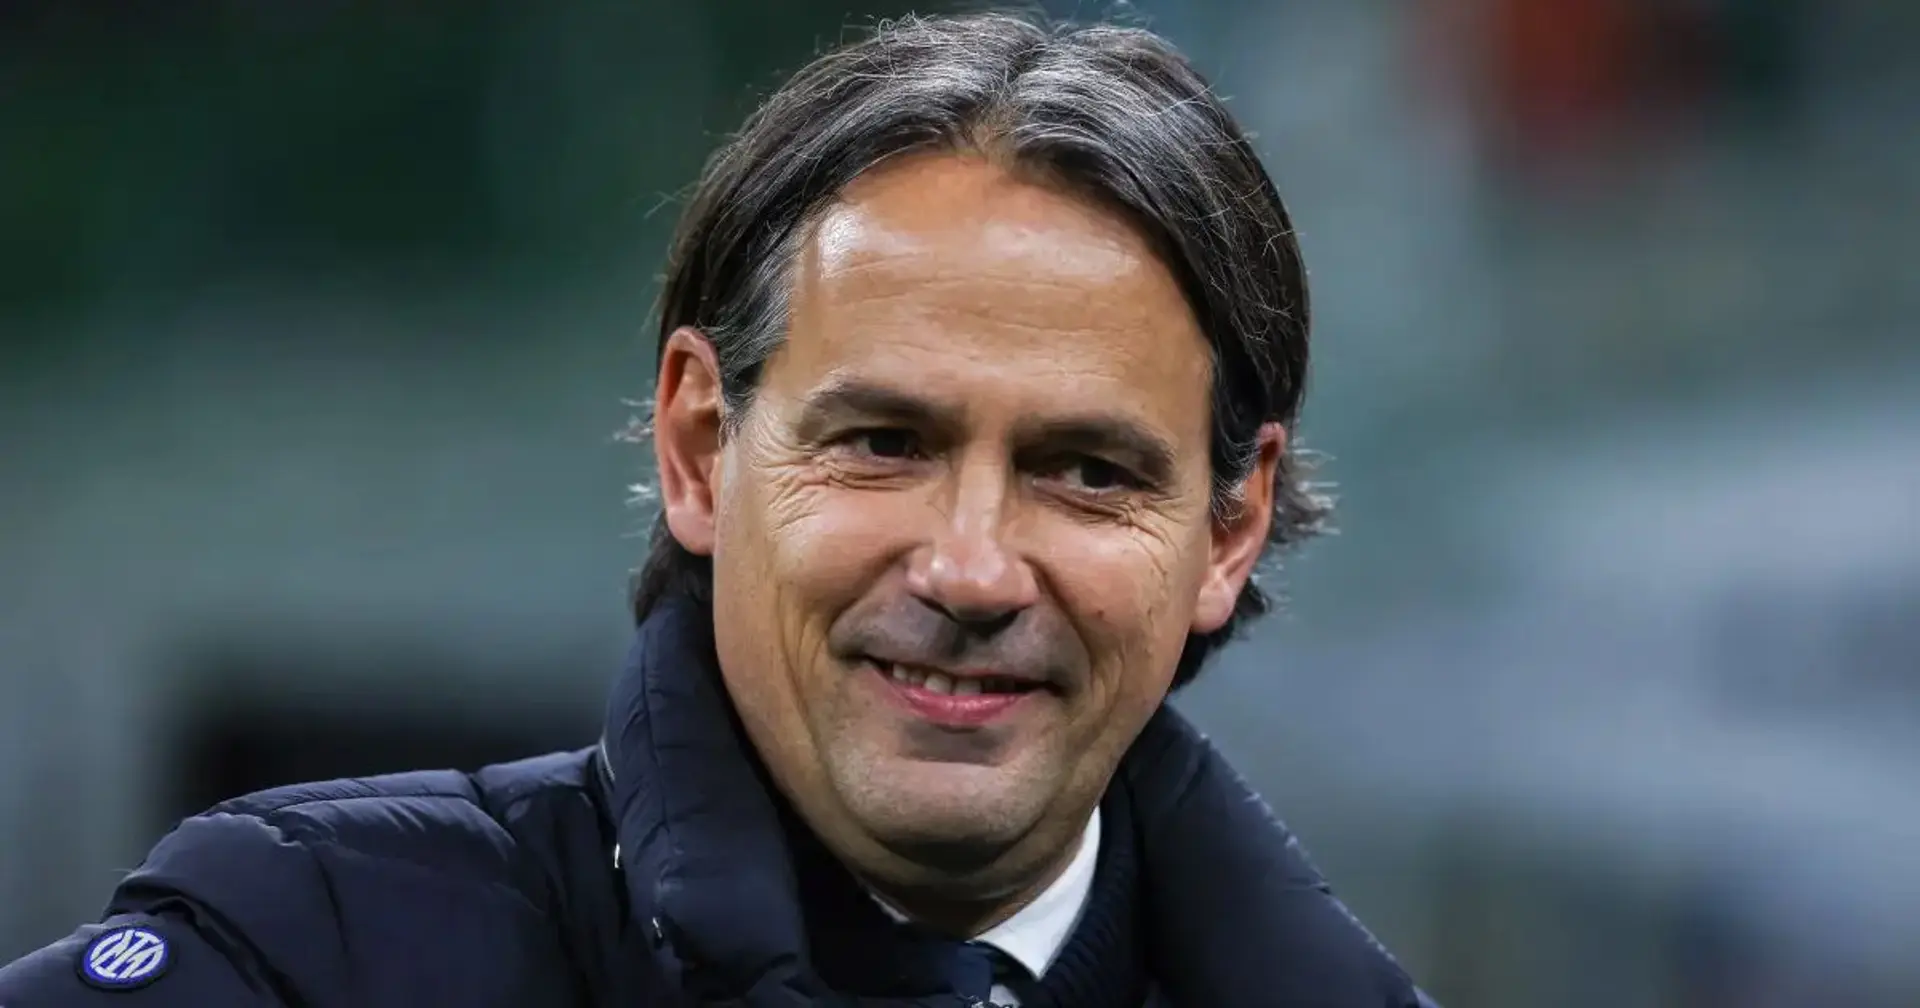 Svelate le 3 richieste che Simone Inzaghi avanzerà all'Inter per firmare il rinnovo di contratto